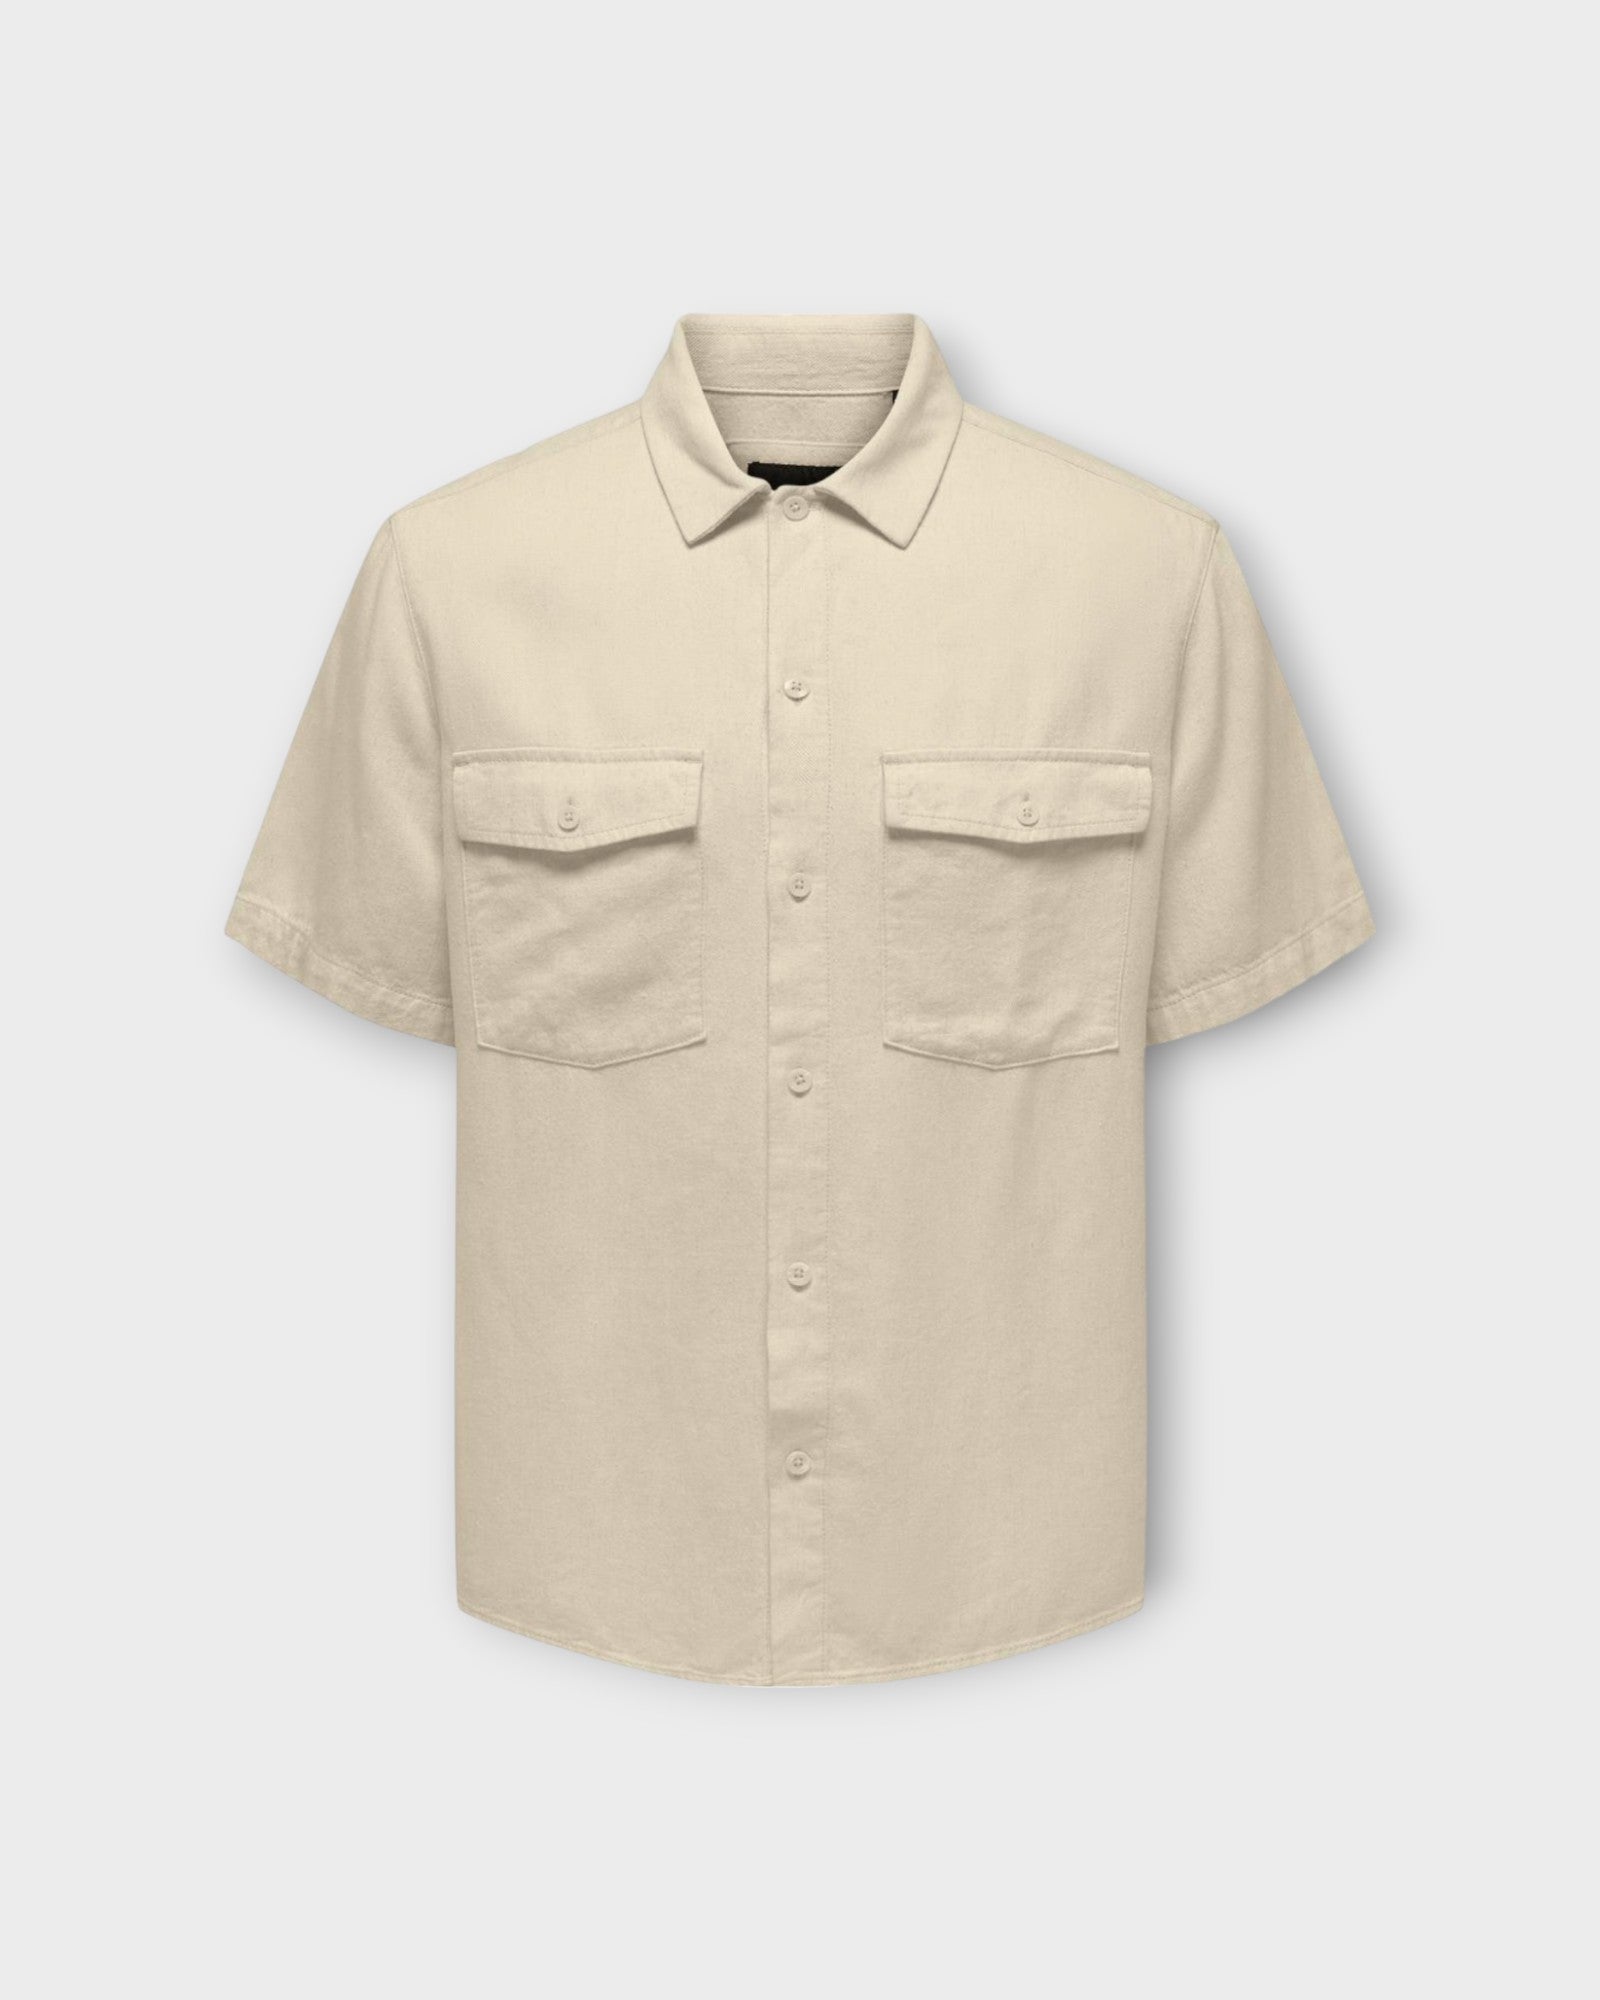 Kari SS Shirt Linen Oatmeal fra Only and Sons. Kortærmet sandfarvet hørskjorte til mænd med 2 brystlommer. Her set forfra.